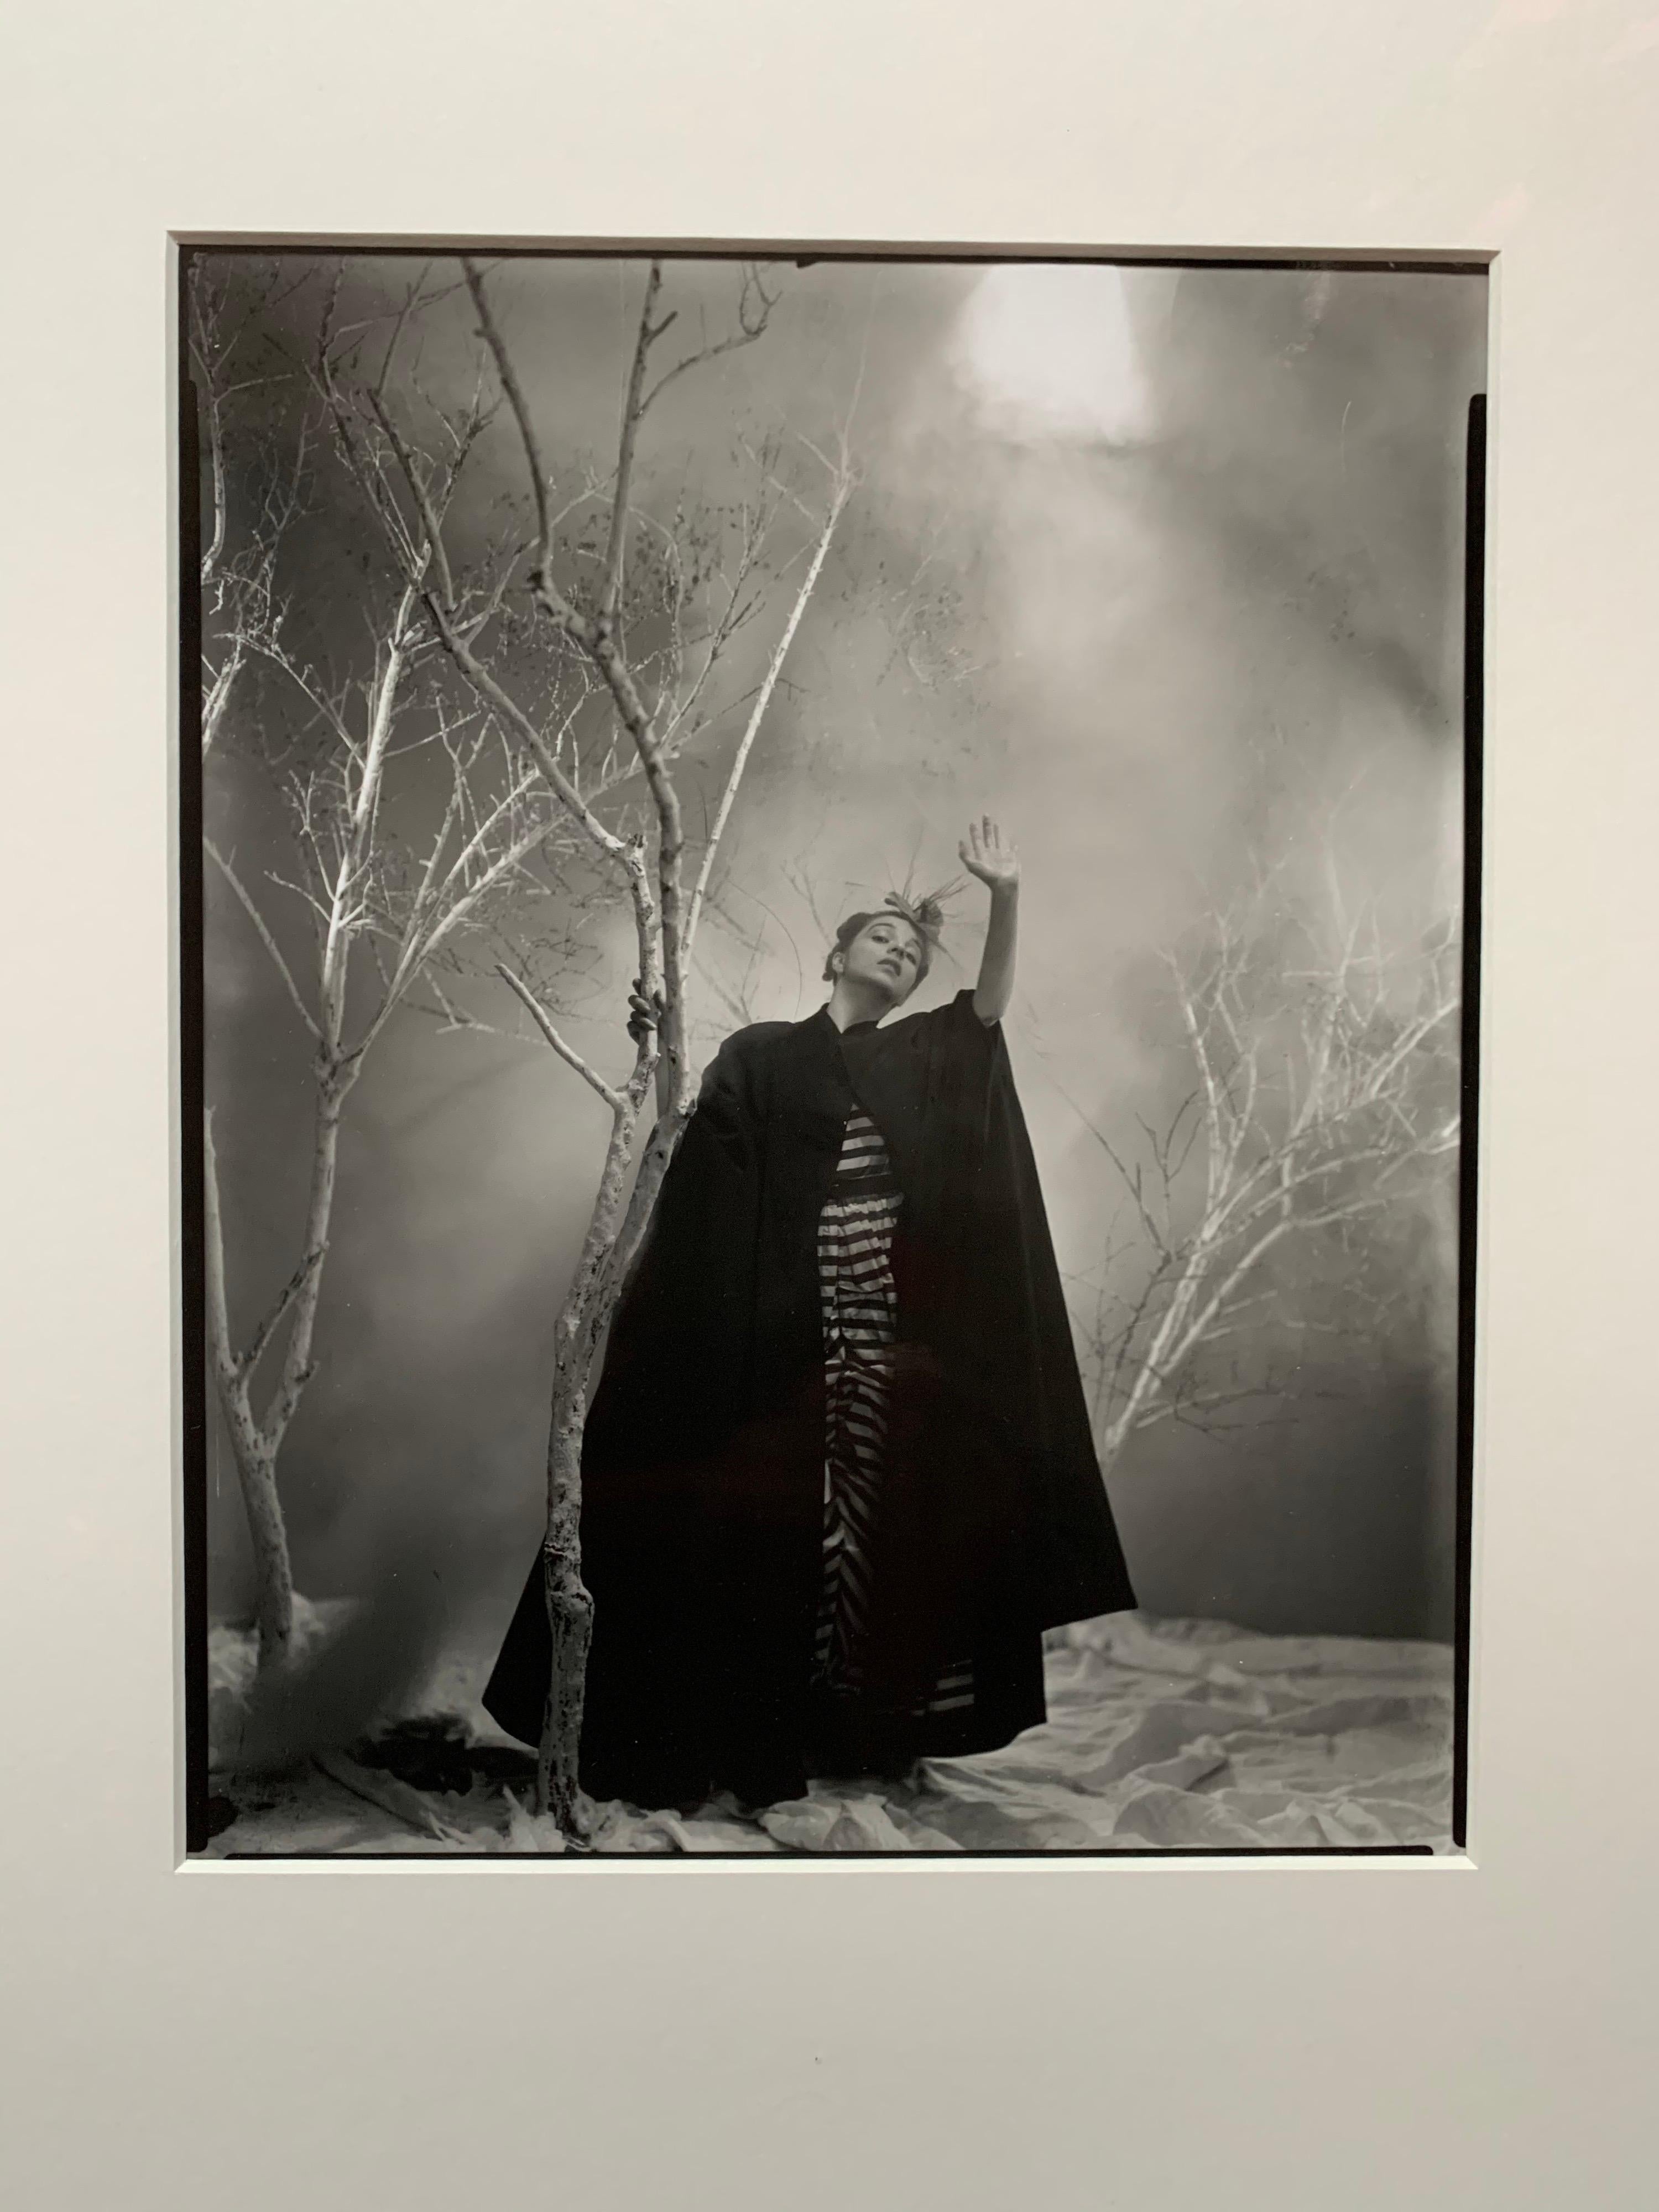 Cette photographie à la gélatine argentée a été tirée en 1999 à partir du négatif original par la Robert Miller Gallery à New York avec l'autorisation de la succession de l'artiste. George Platt Lynes (1907-1955) était un photographe de mode